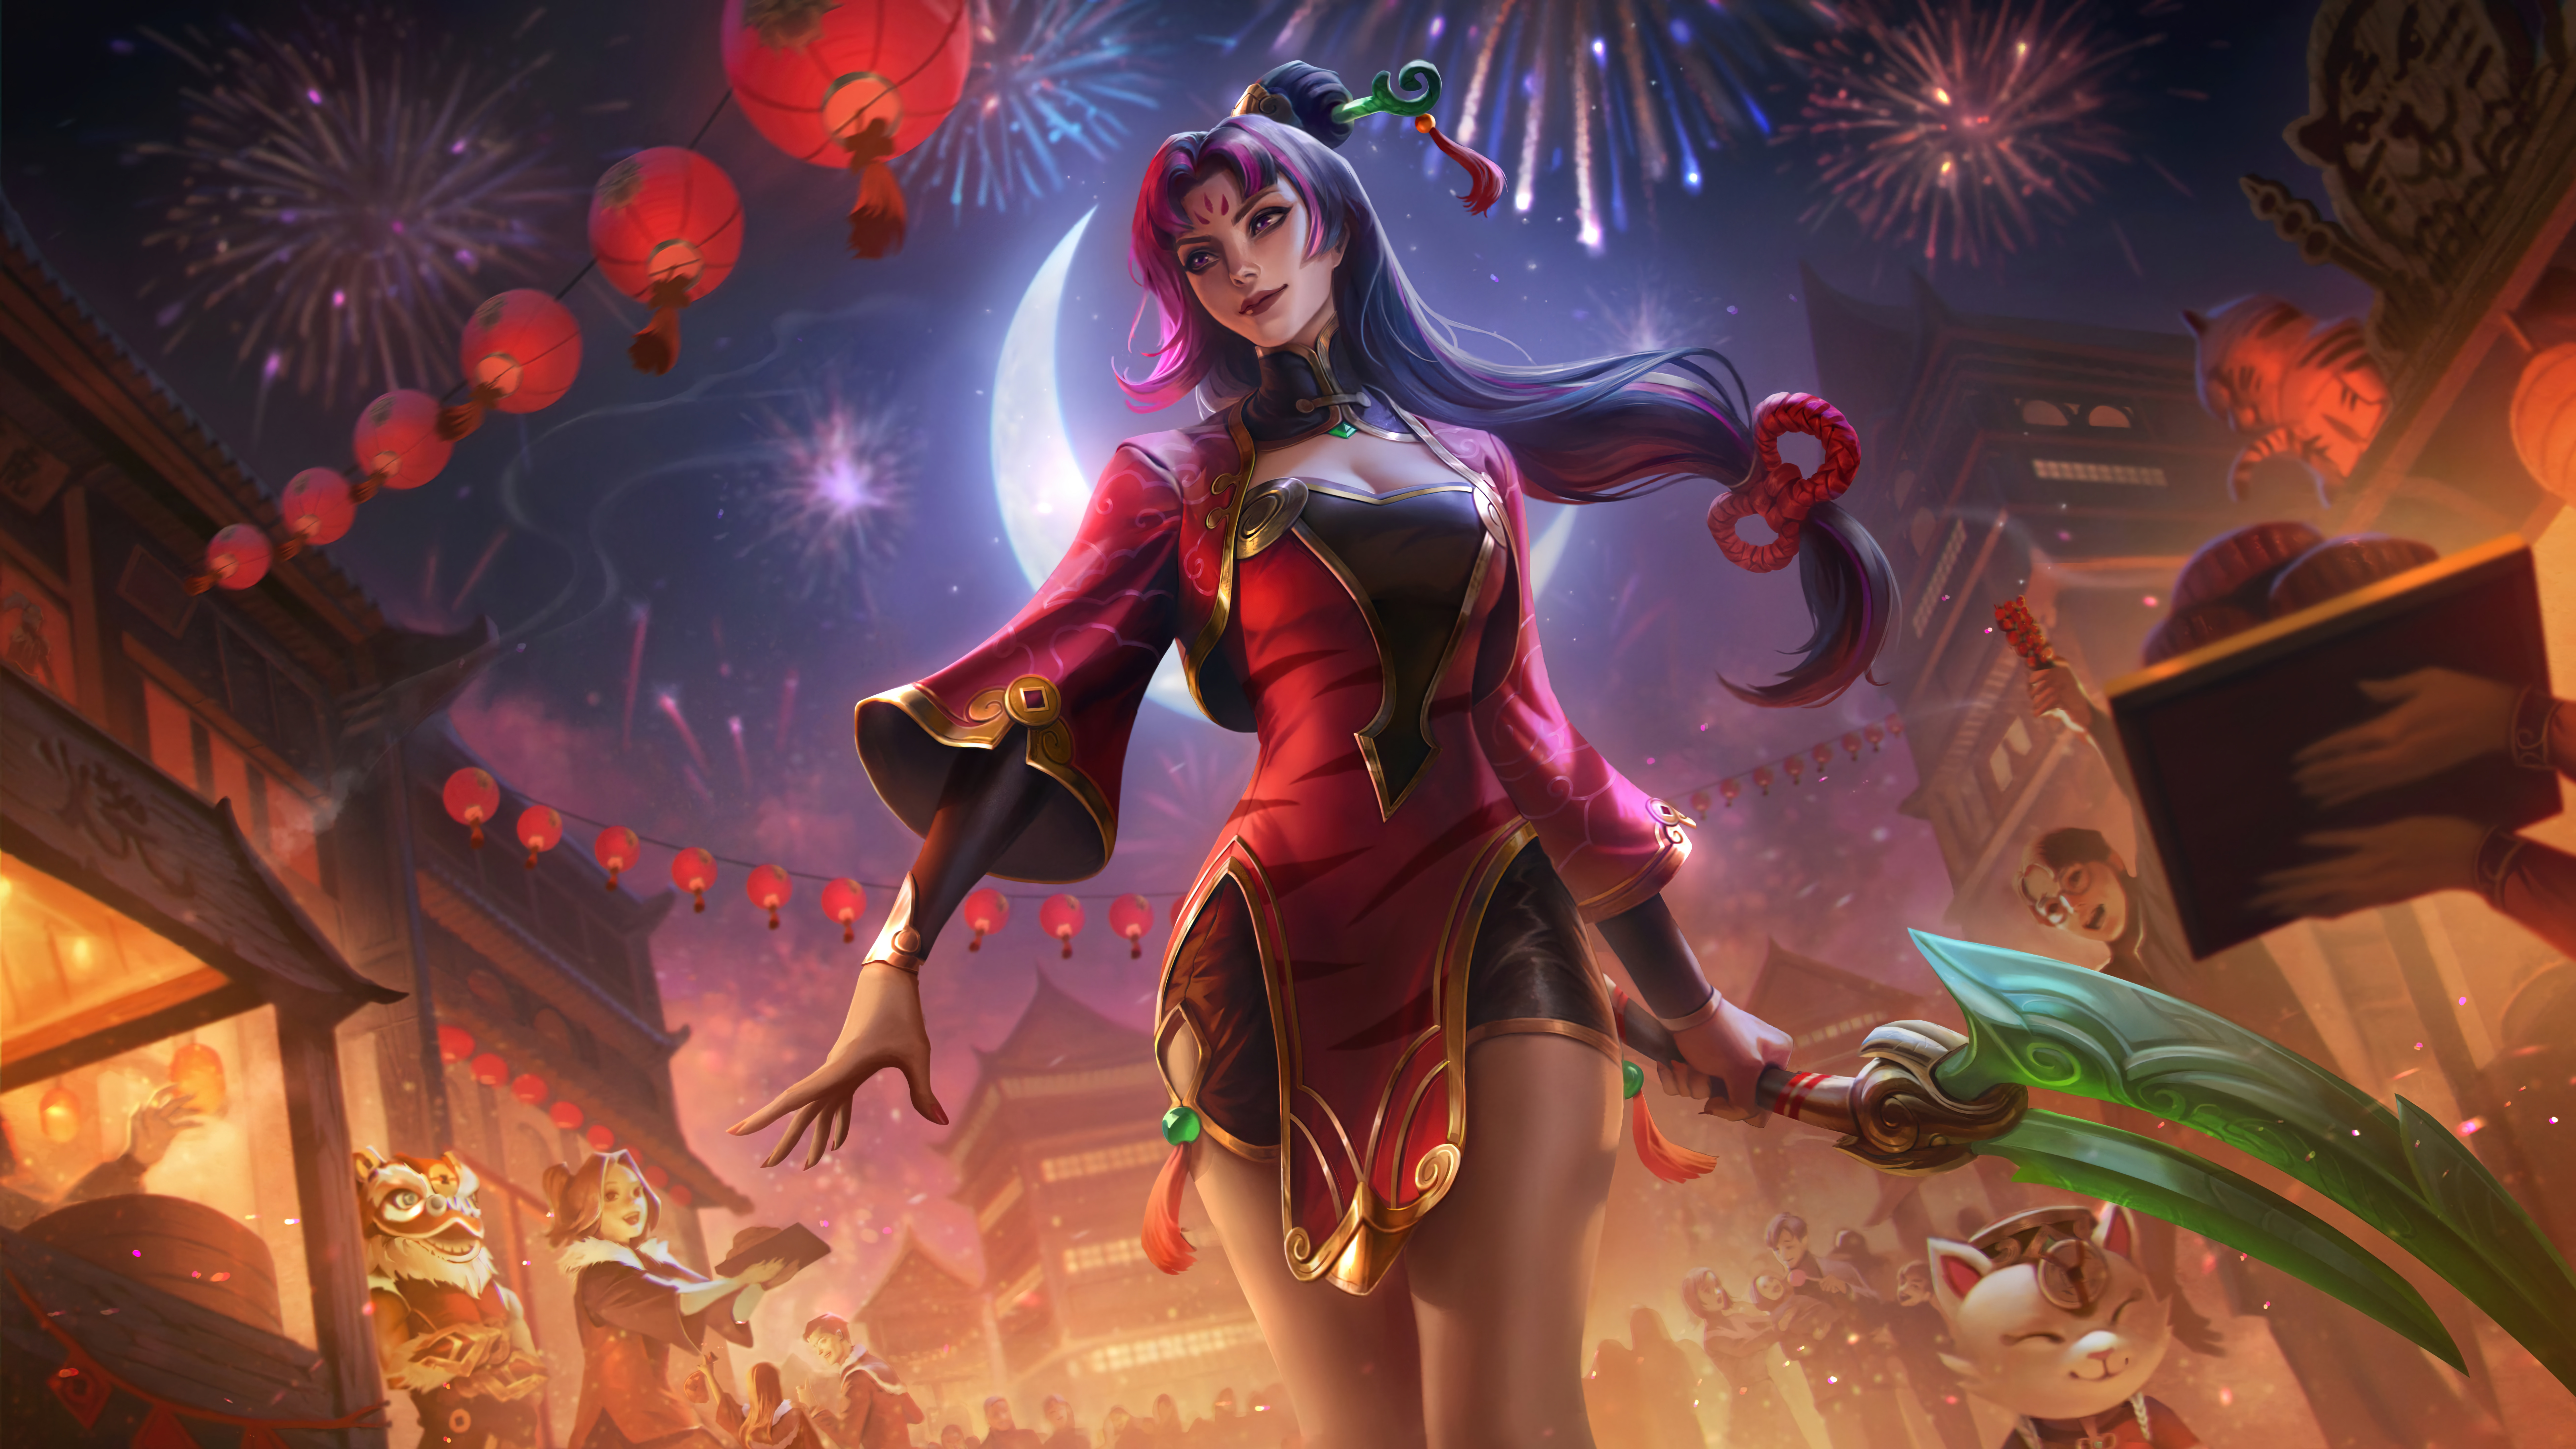 Firecracker Diana League Of Legends League Of Legends Riot Games Digital Art GZG 4K New Year Fire 7680x4320